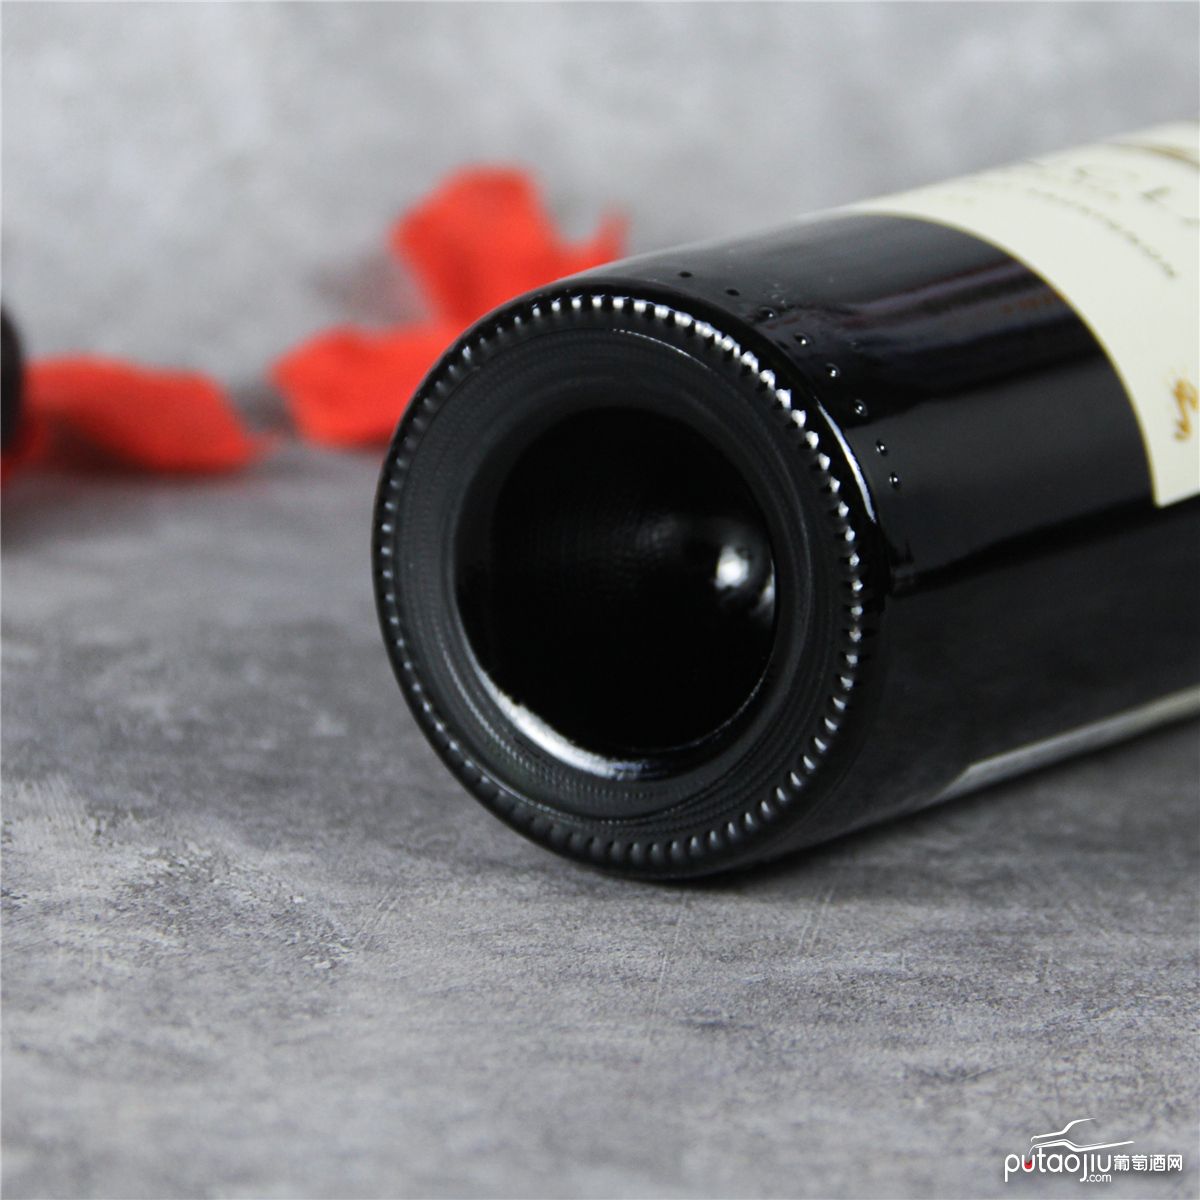 智利中央山谷安可拉特级珍藏赤霞珠红葡萄酒红酒